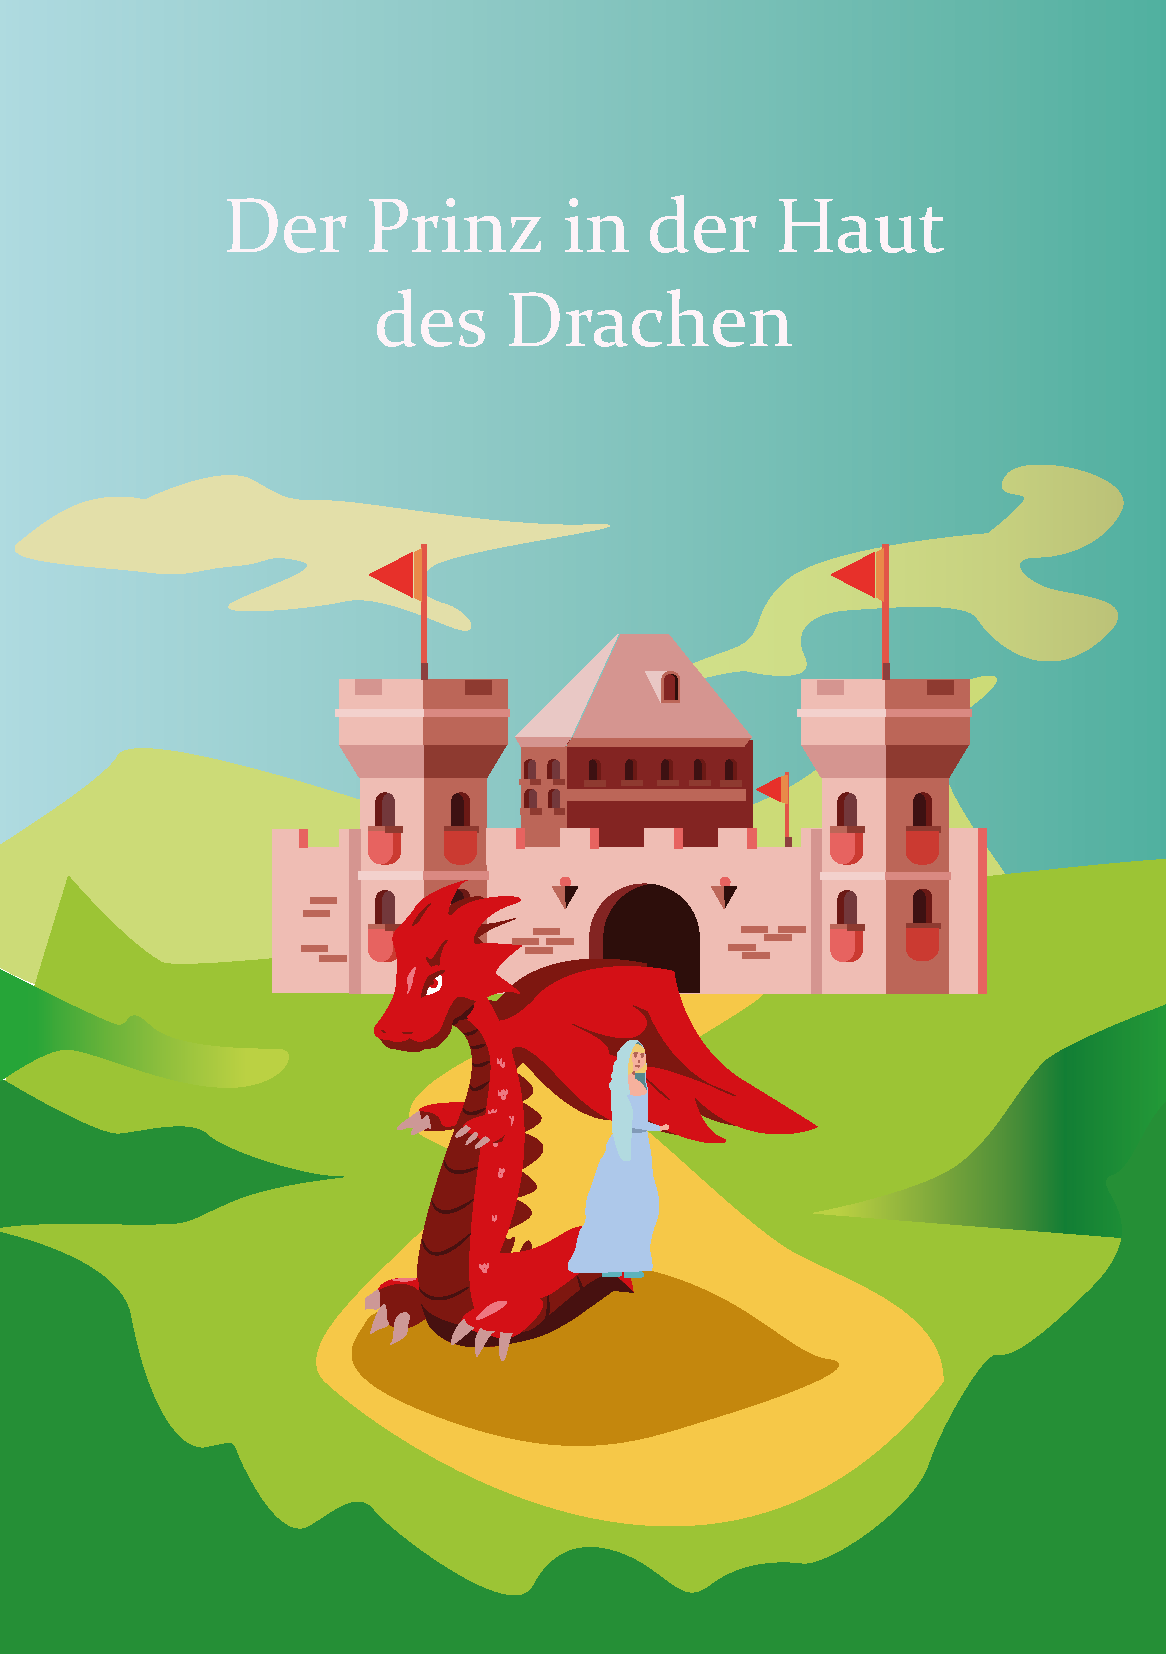 dragon fairytale fantasy märchen prince Princess tale